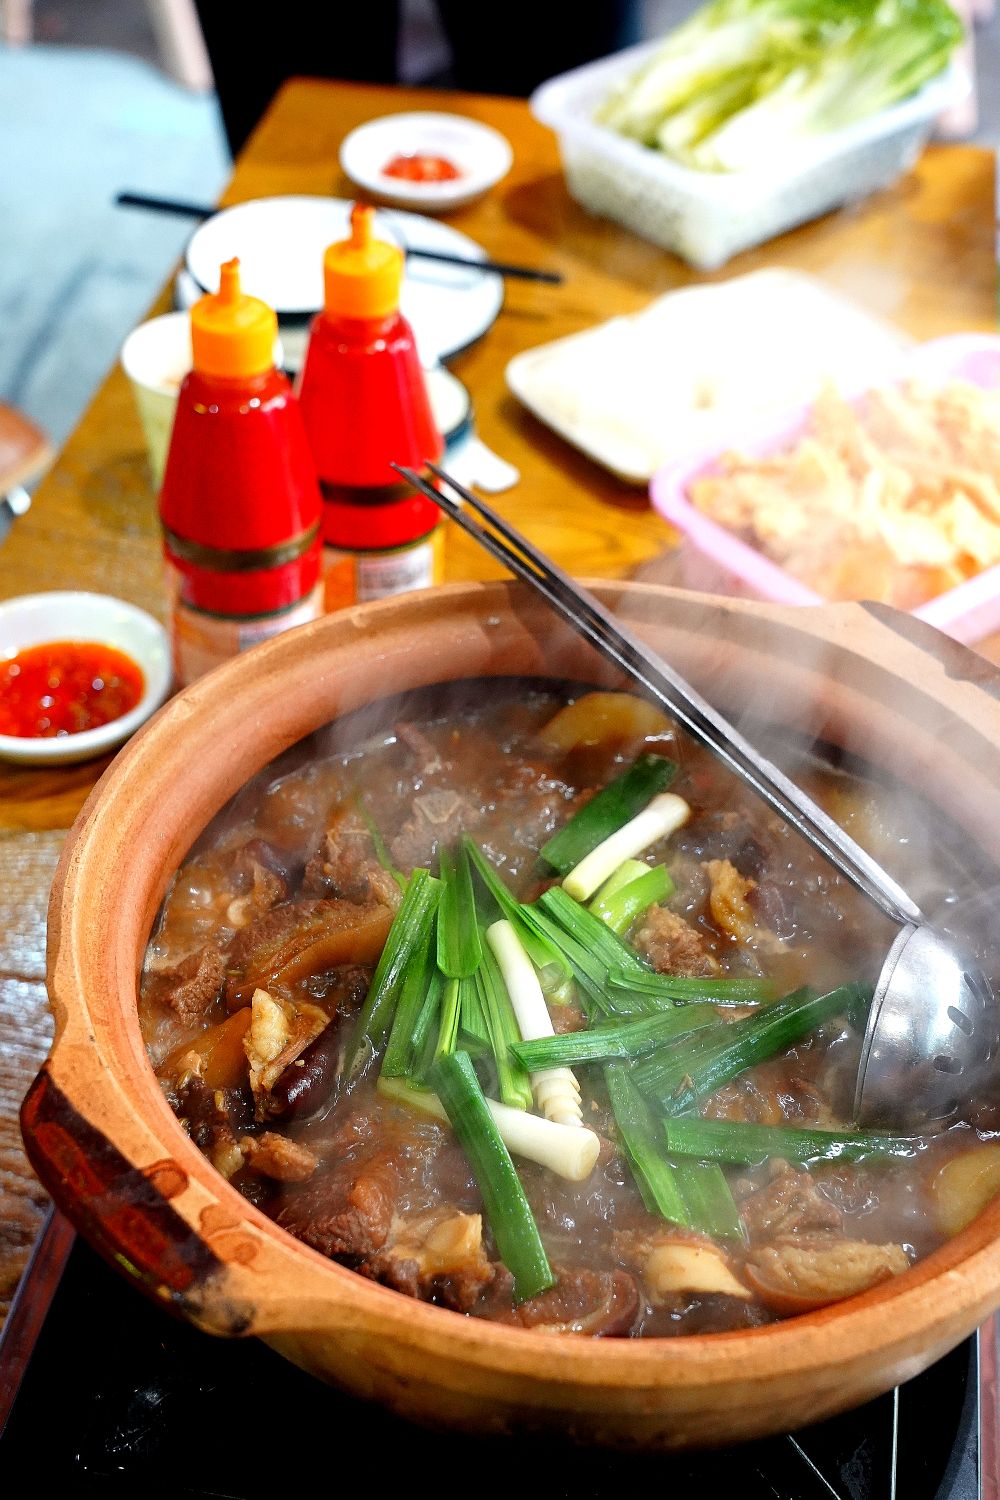 燕塘这家深藏民宅的餐馆,吃到了据说广州仅此一家的脆皮羊肉煲?